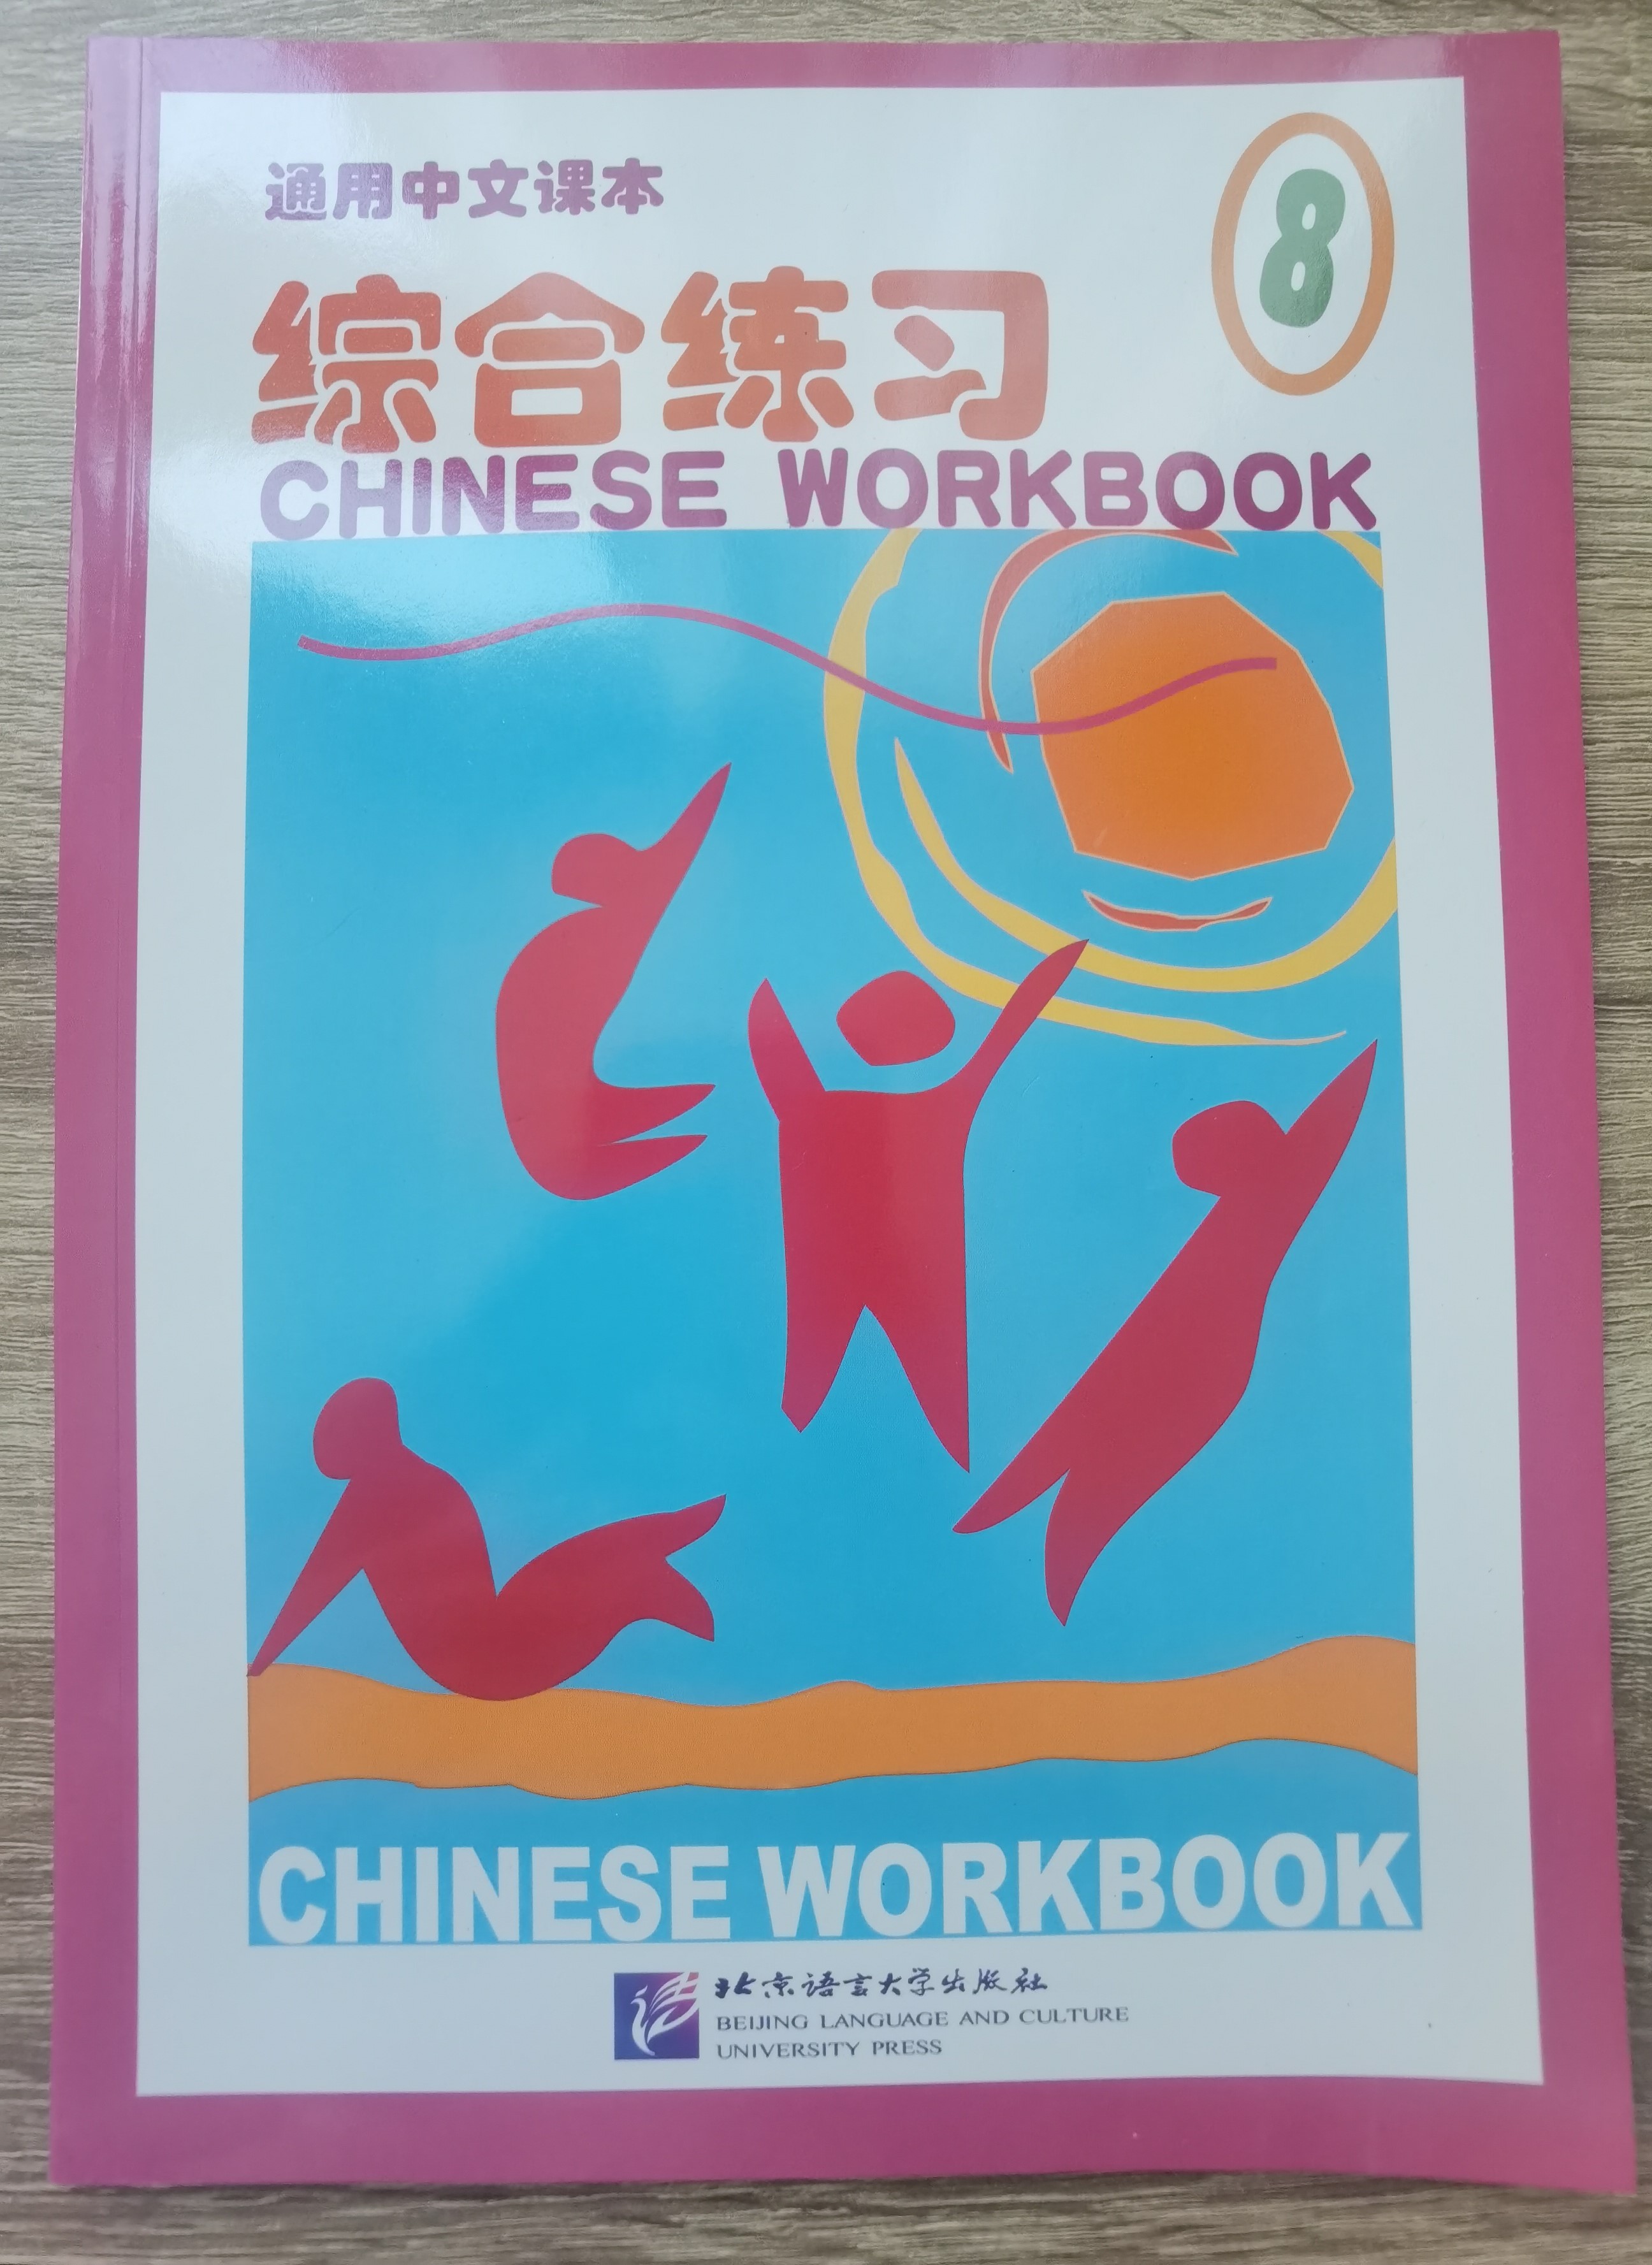 หนังสือแบบฝึกหัดภาษาจีน 通用中文课本8—综合练习 เล่มละ 200 บาท